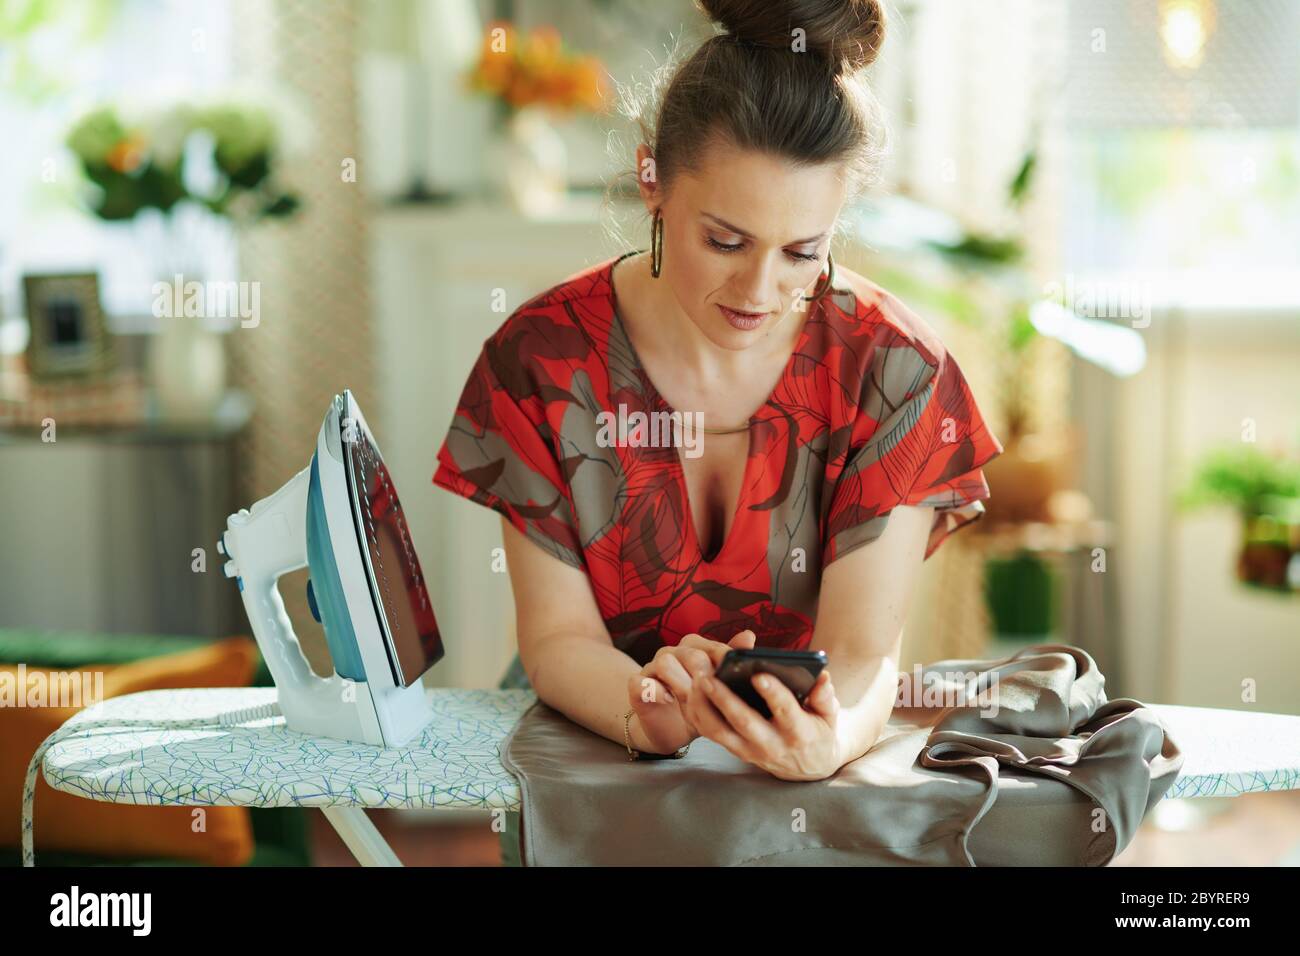 donna di media età alla moda in blusa rossa e gonna a matita grigia con ferro da stiro che controlla come stirare correttamente su internet su uno smartphone nella vita moderna Foto Stock